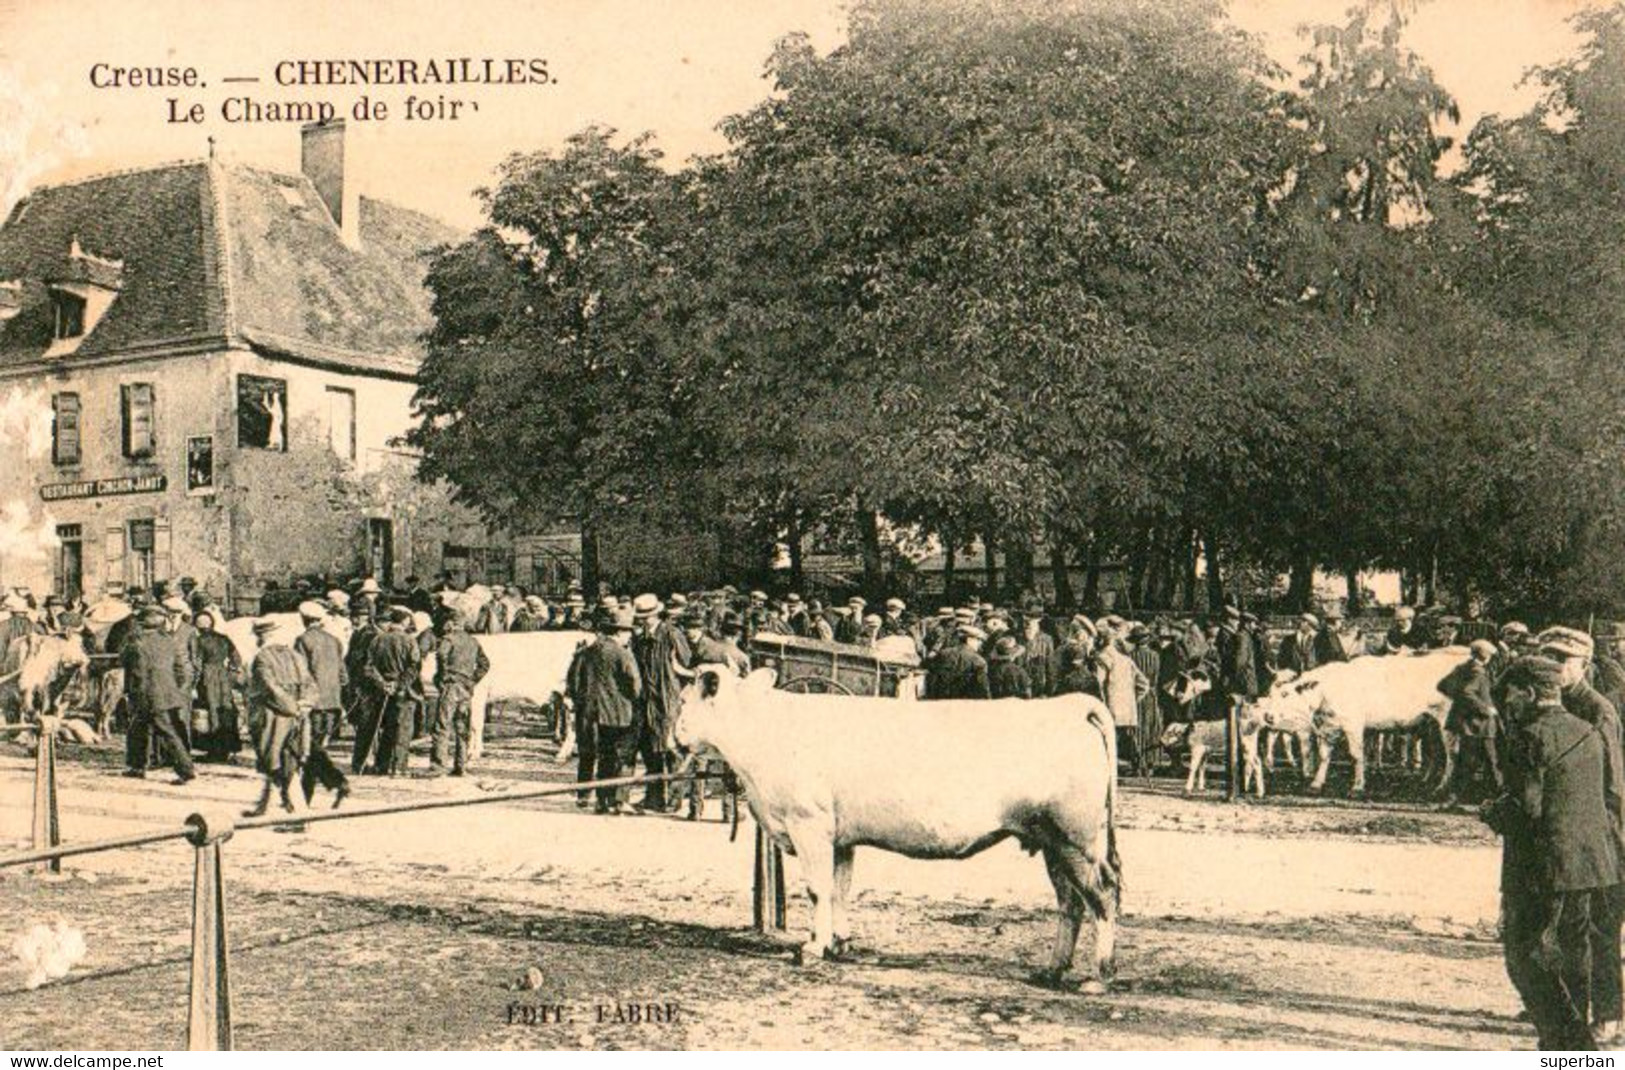 CHÉNÉRAILLES ( CREUSE 23 ) : LE CHAMP DE FOIRE [ TRÈS BELLE ANIMATION ! ] - ÉDIT. FABRE ~ 1910 - '15 ? - RRR !!! (ak499) - Chenerailles